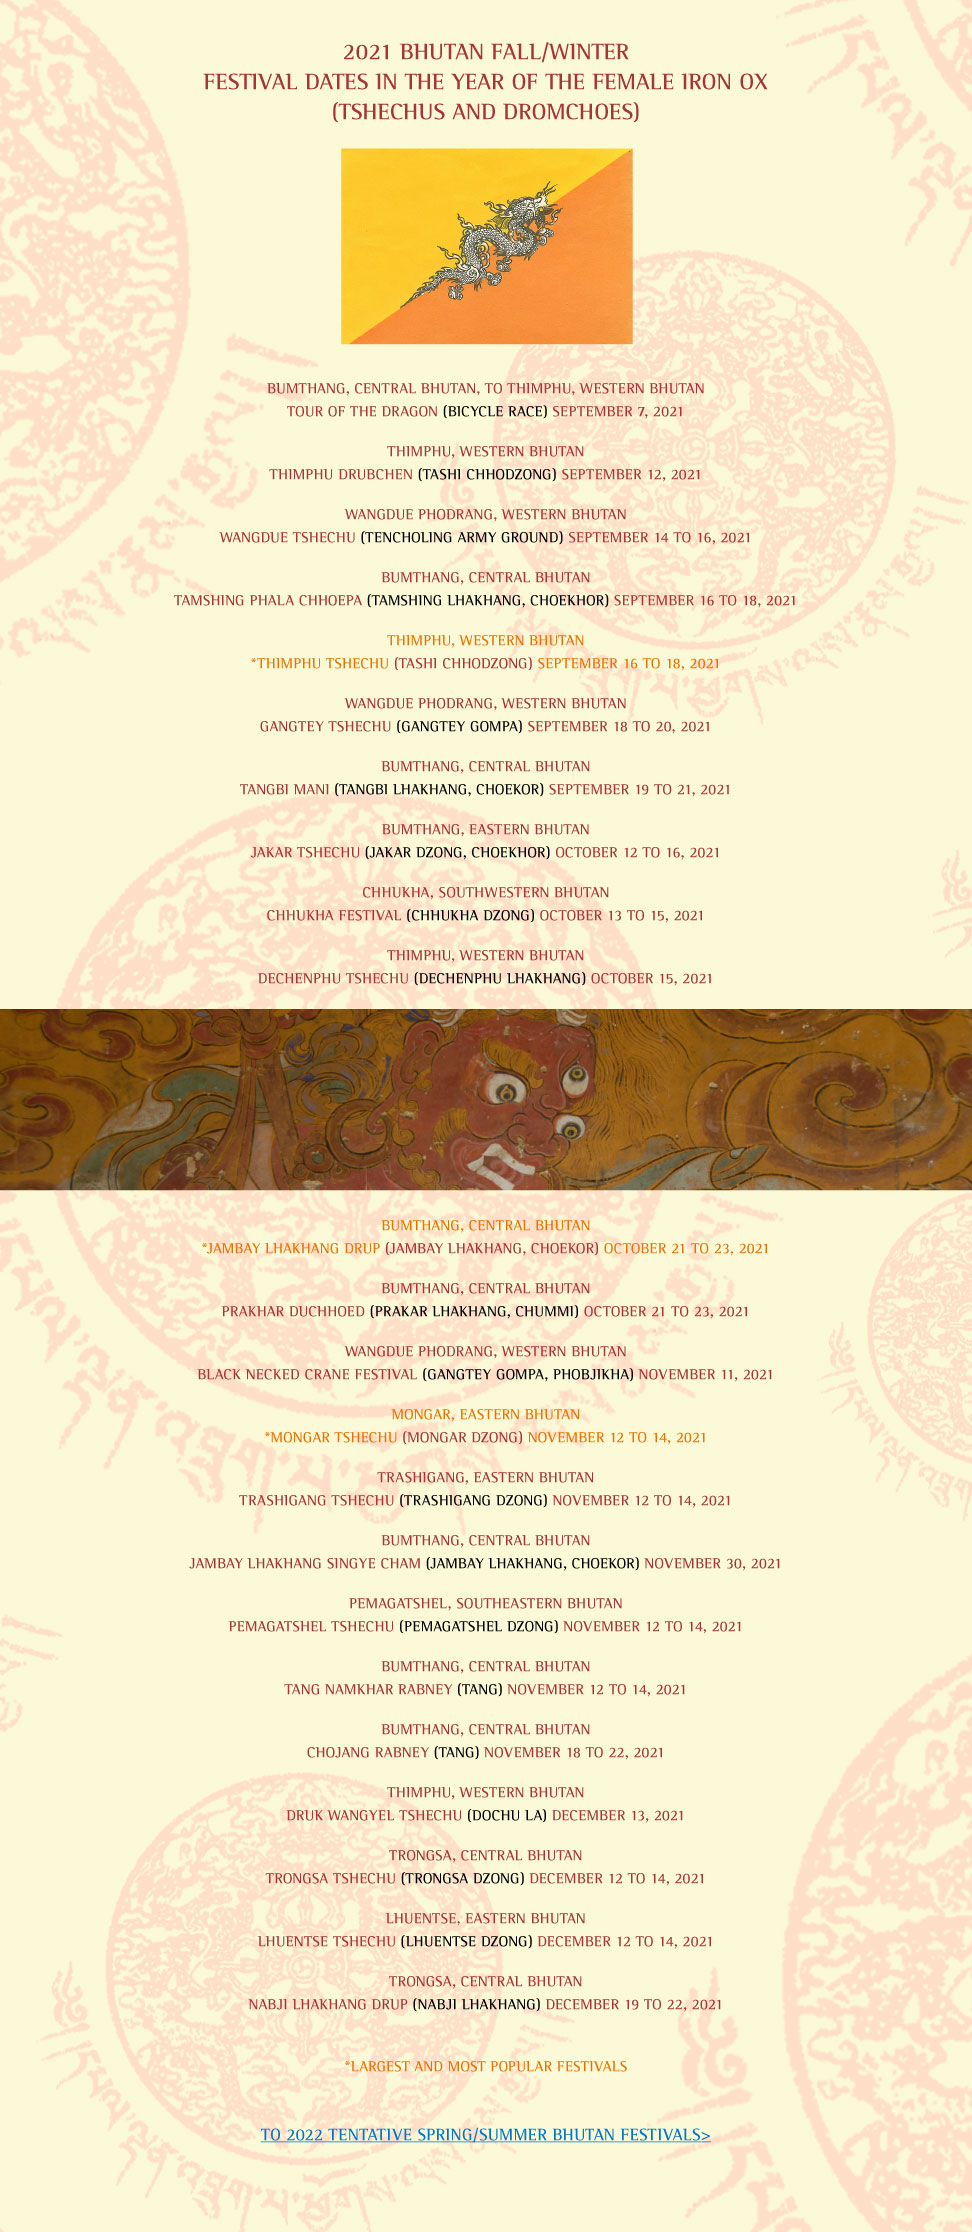 Bhutan Festivals Fall Winter 2021